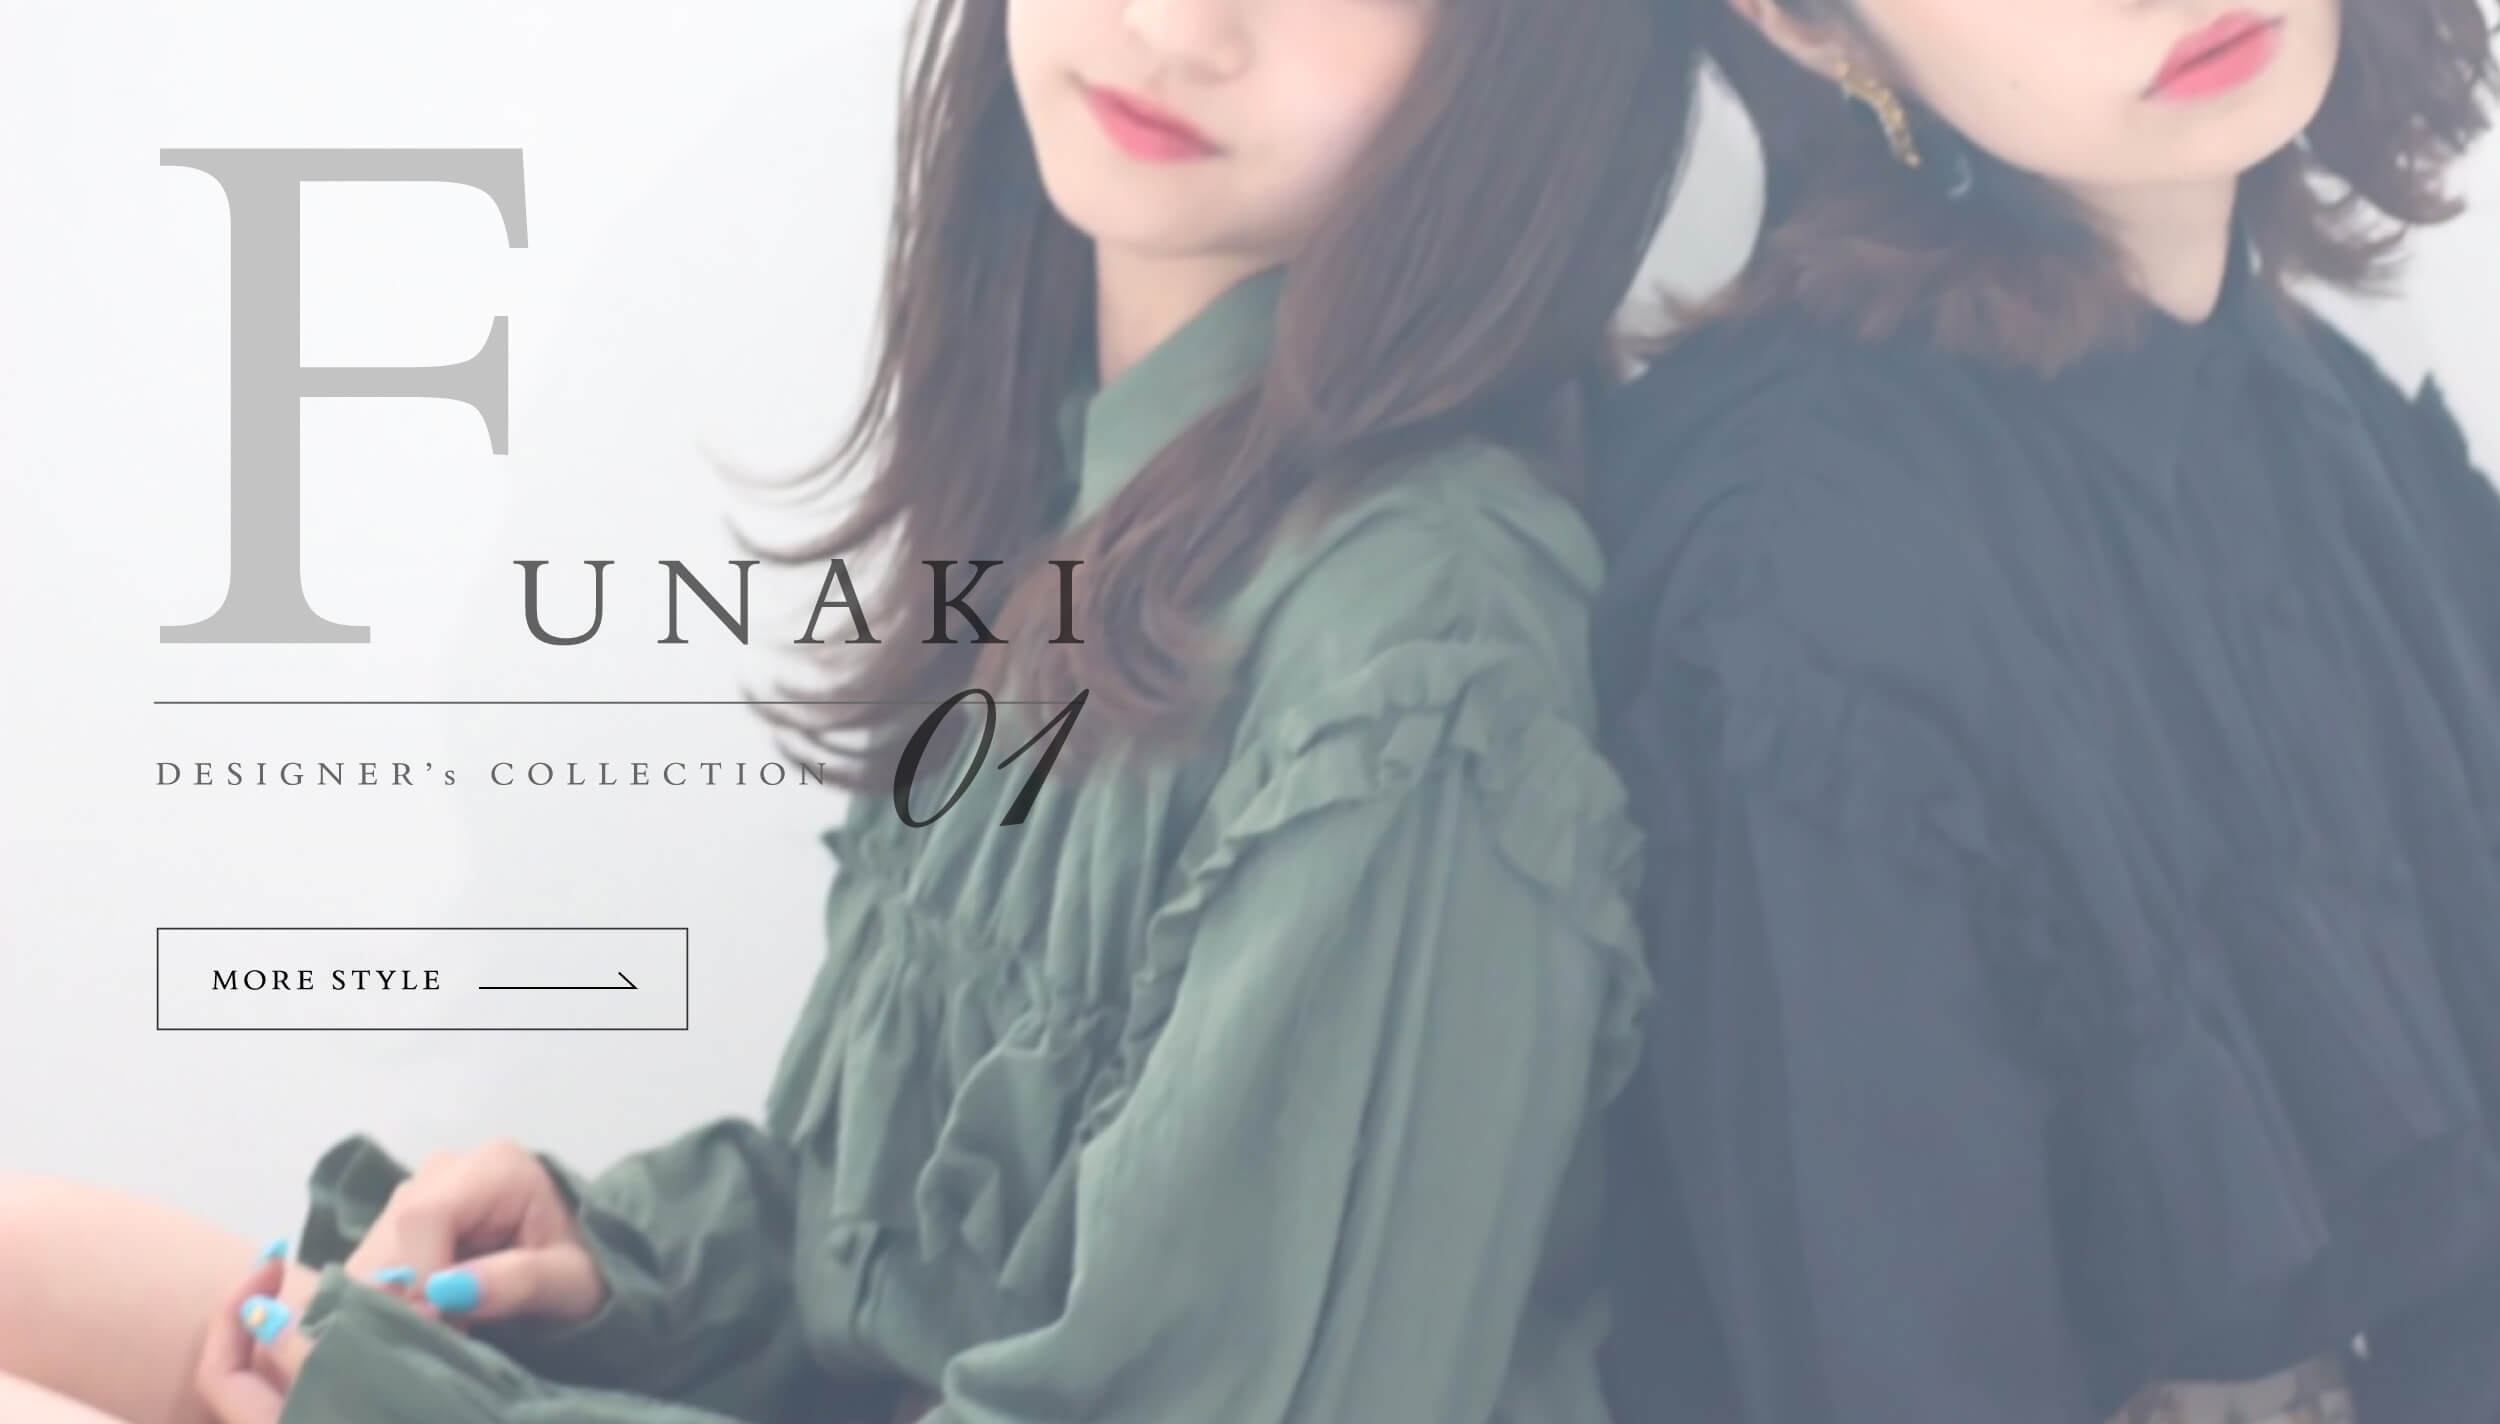 Designer's collection 01 FUNAKI